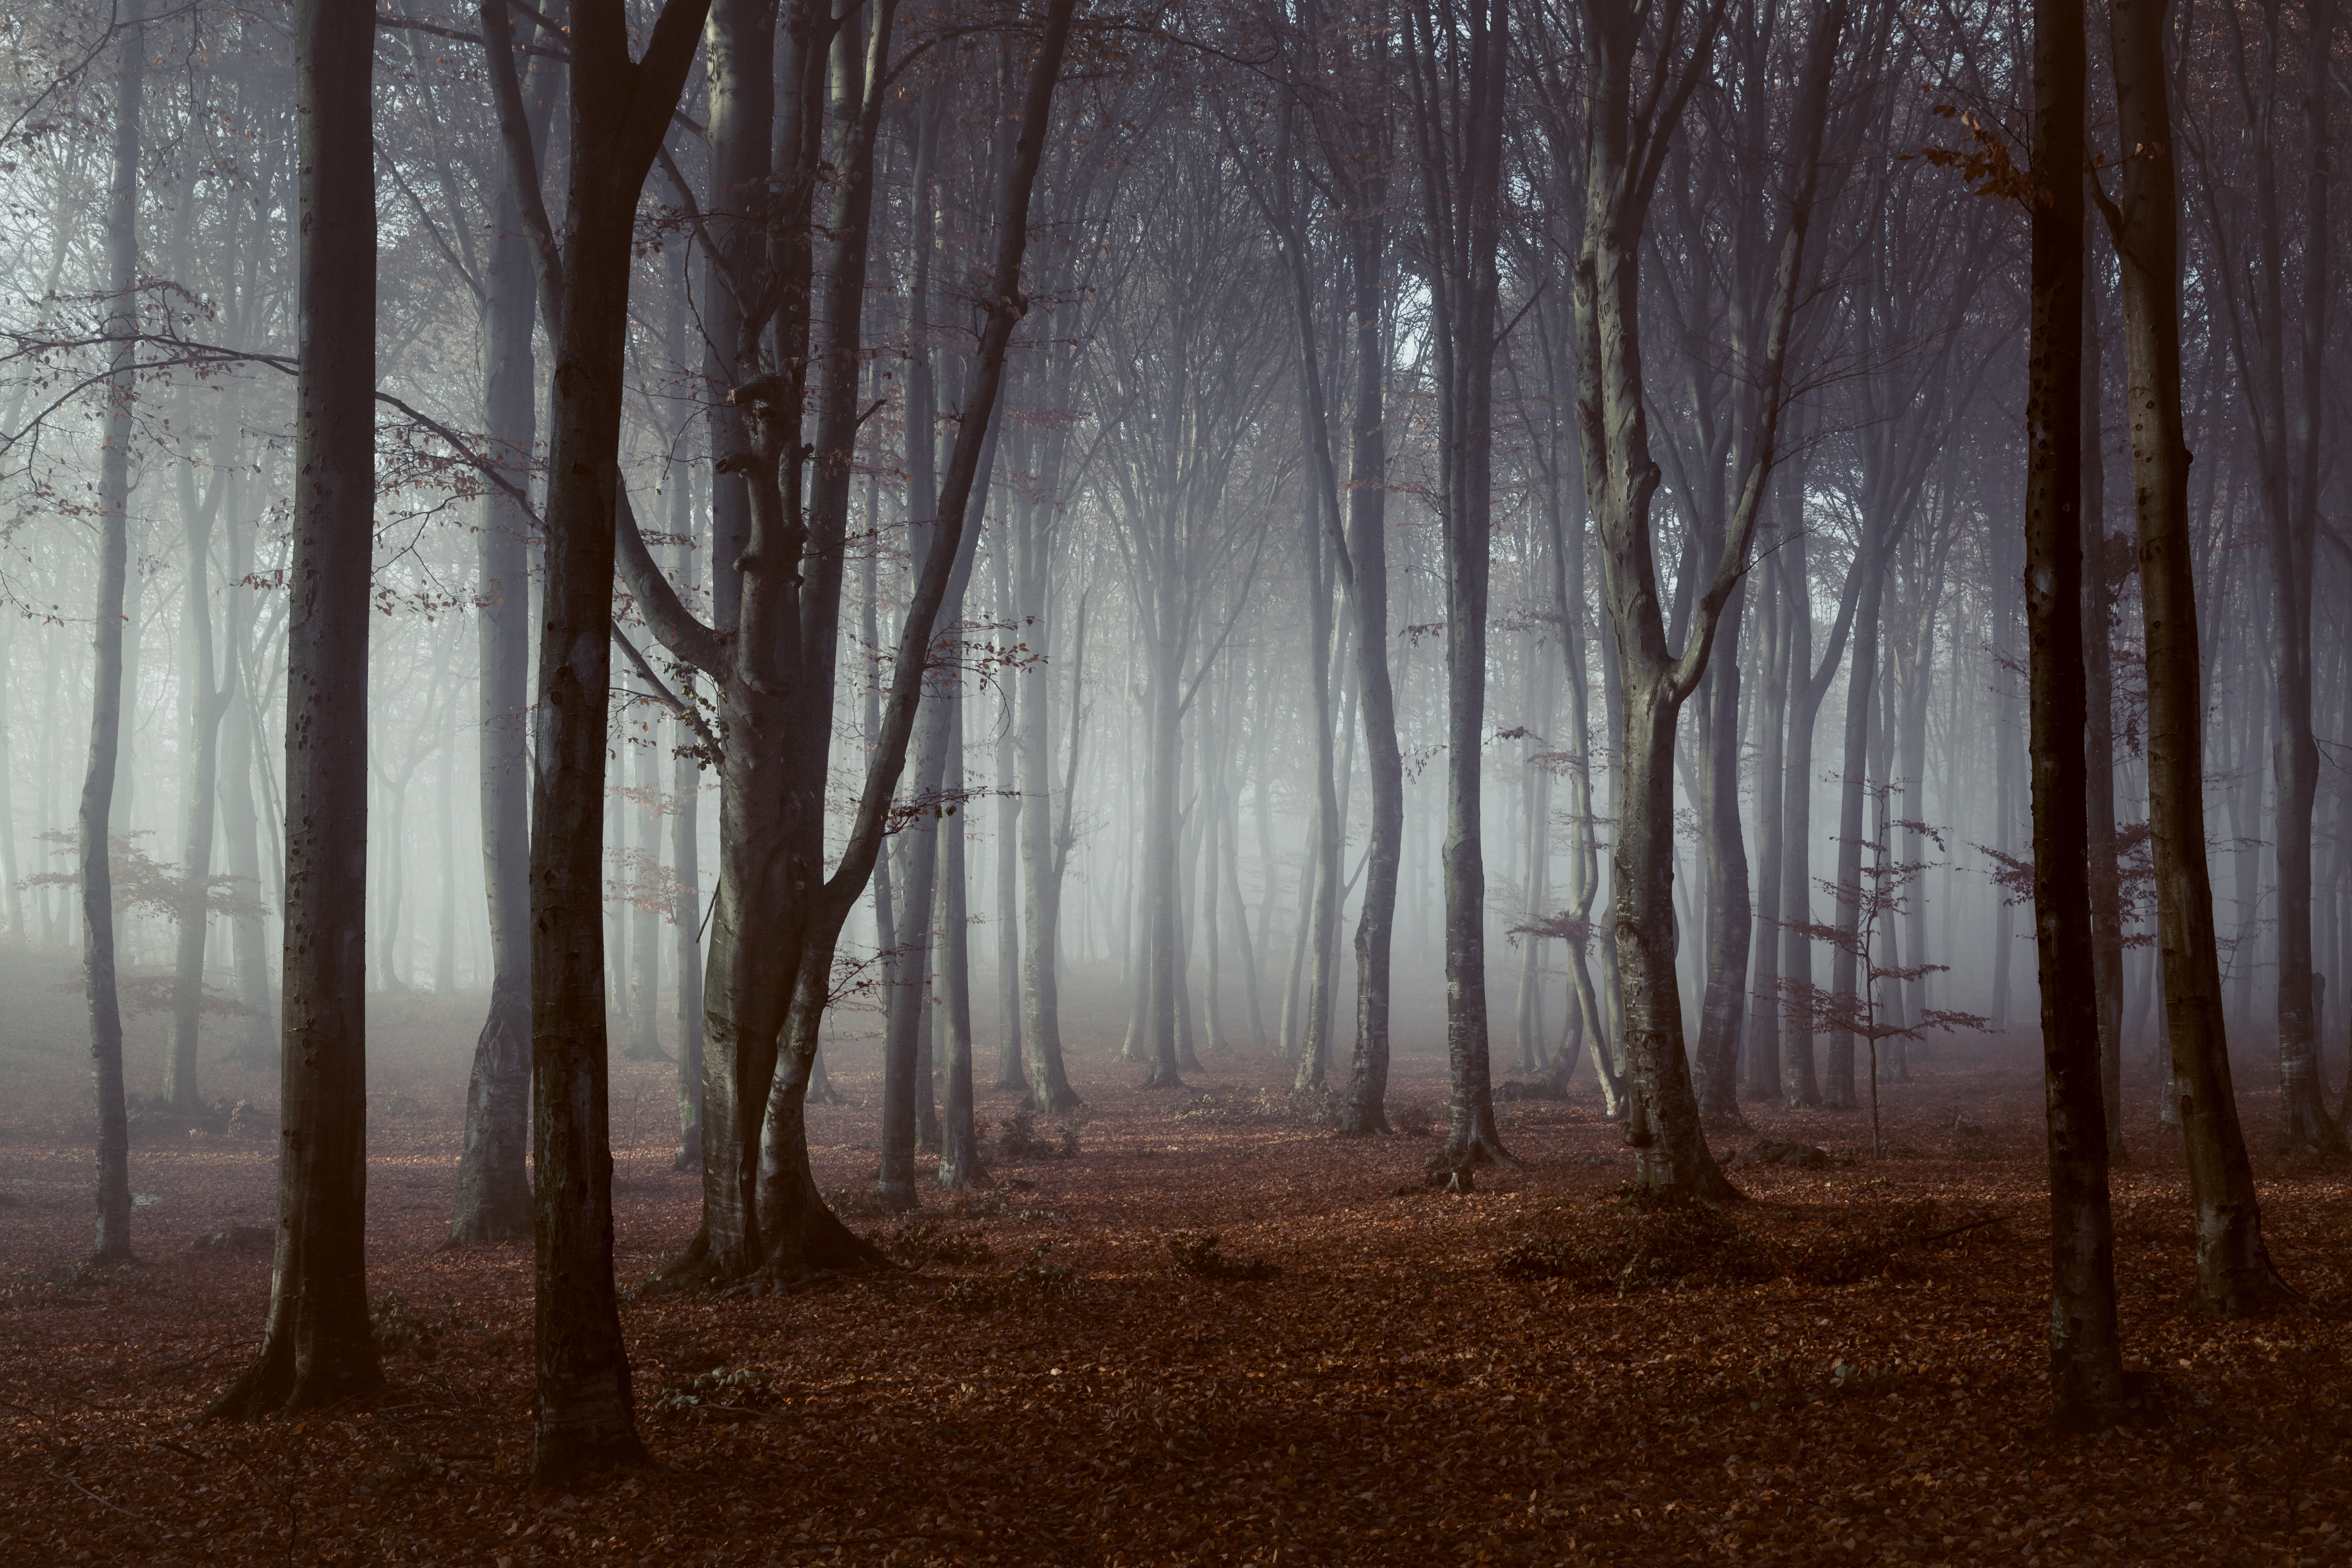 Woods | Source: Shutterstock